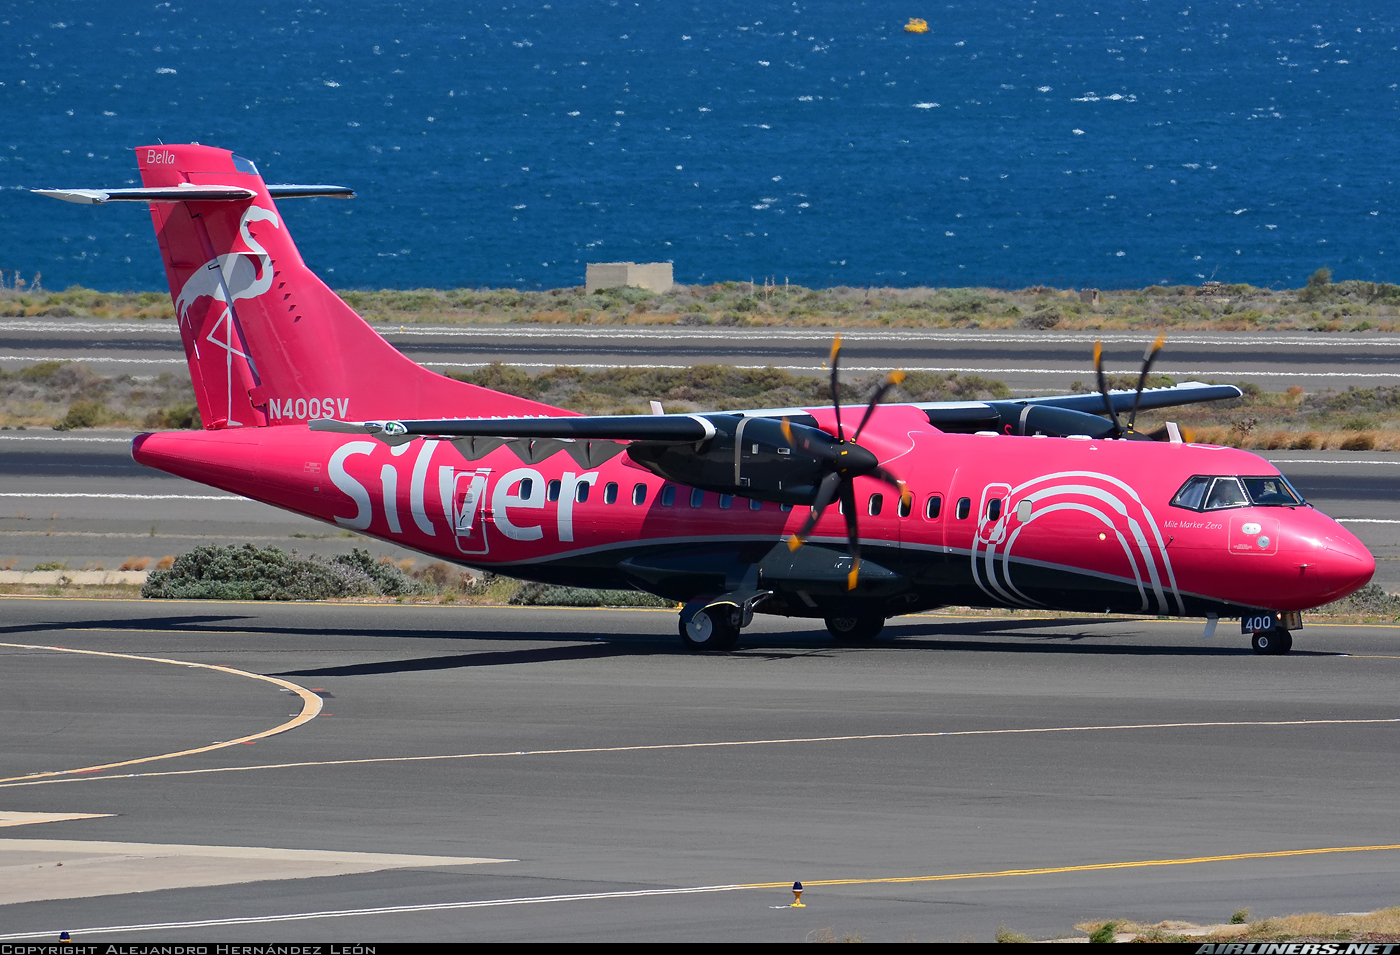 Silver-ATR-runway-by-ocean-4947211